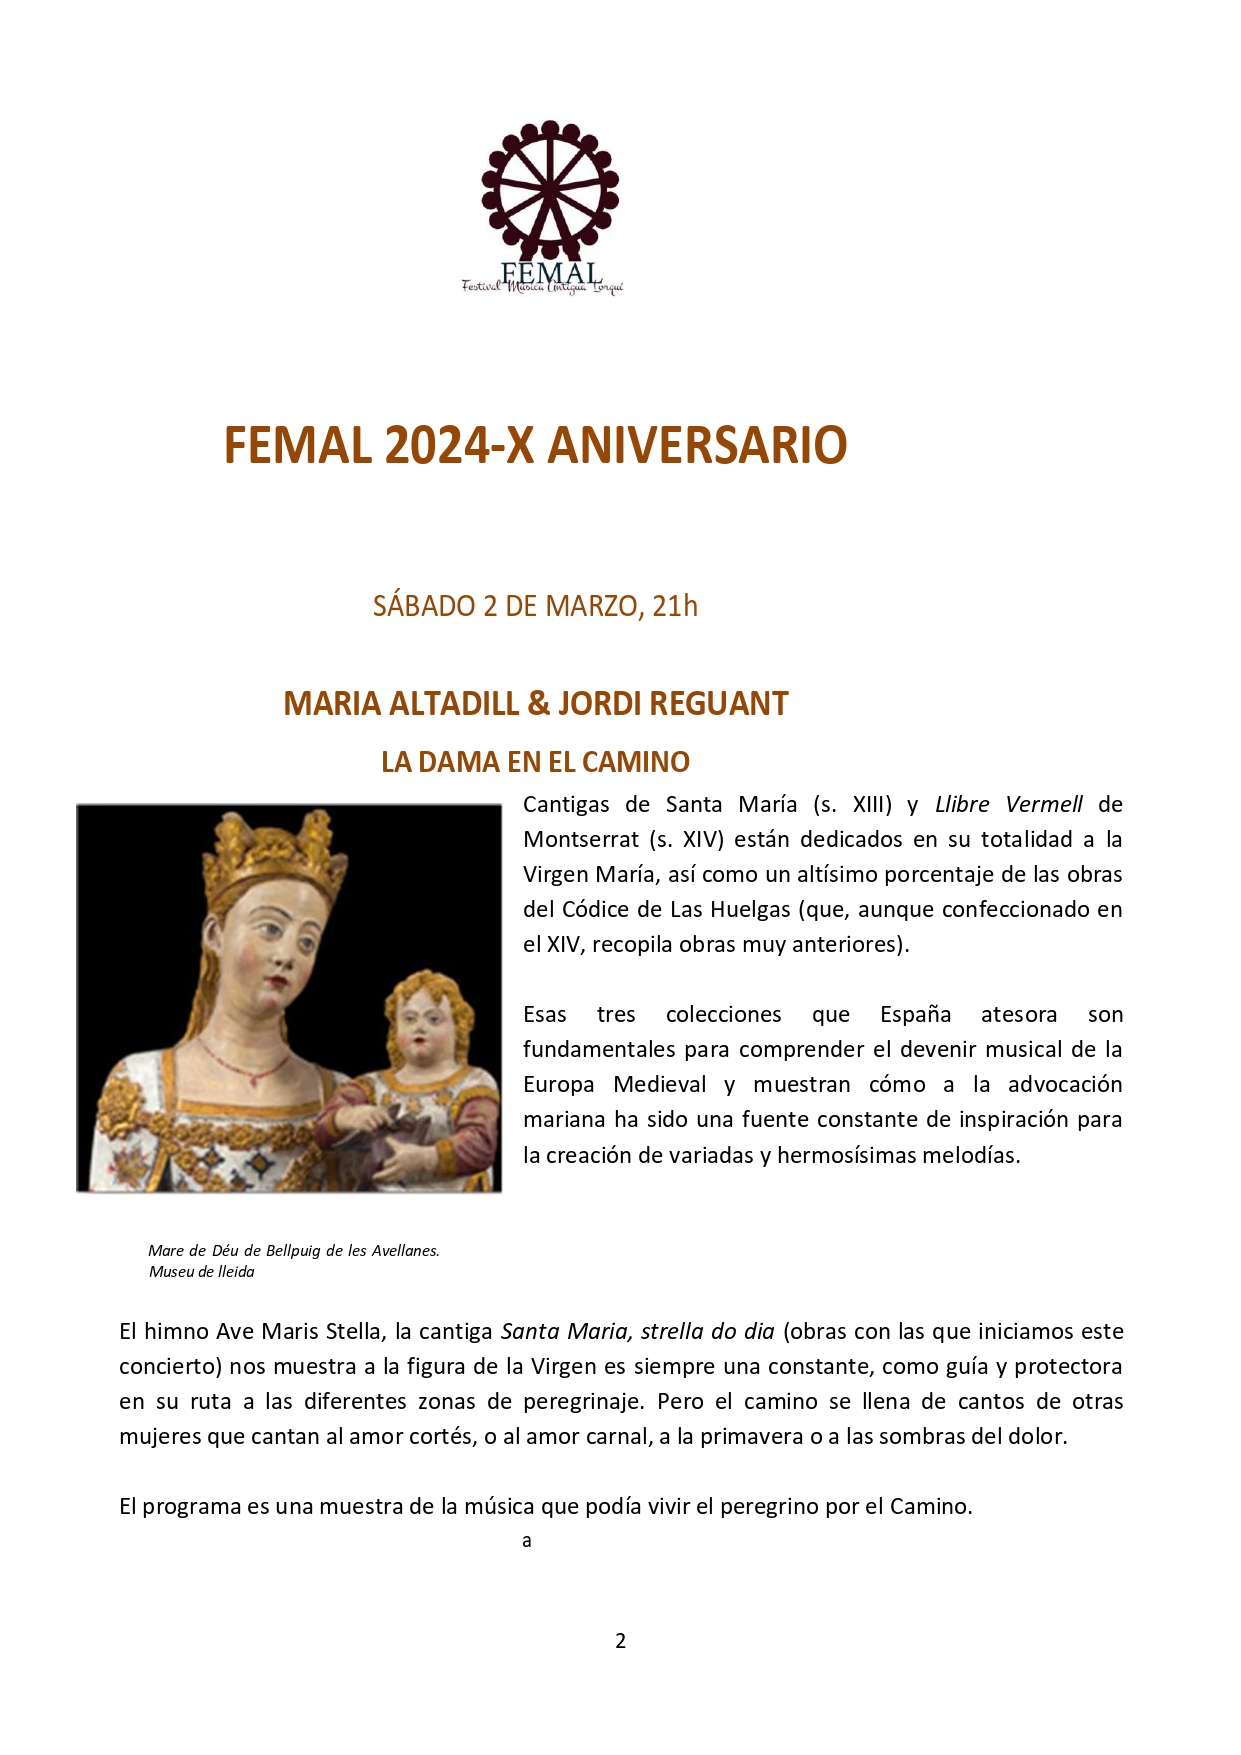 FEMAL-conciertos-lorqui-musica-antigua_page-0002.jpg